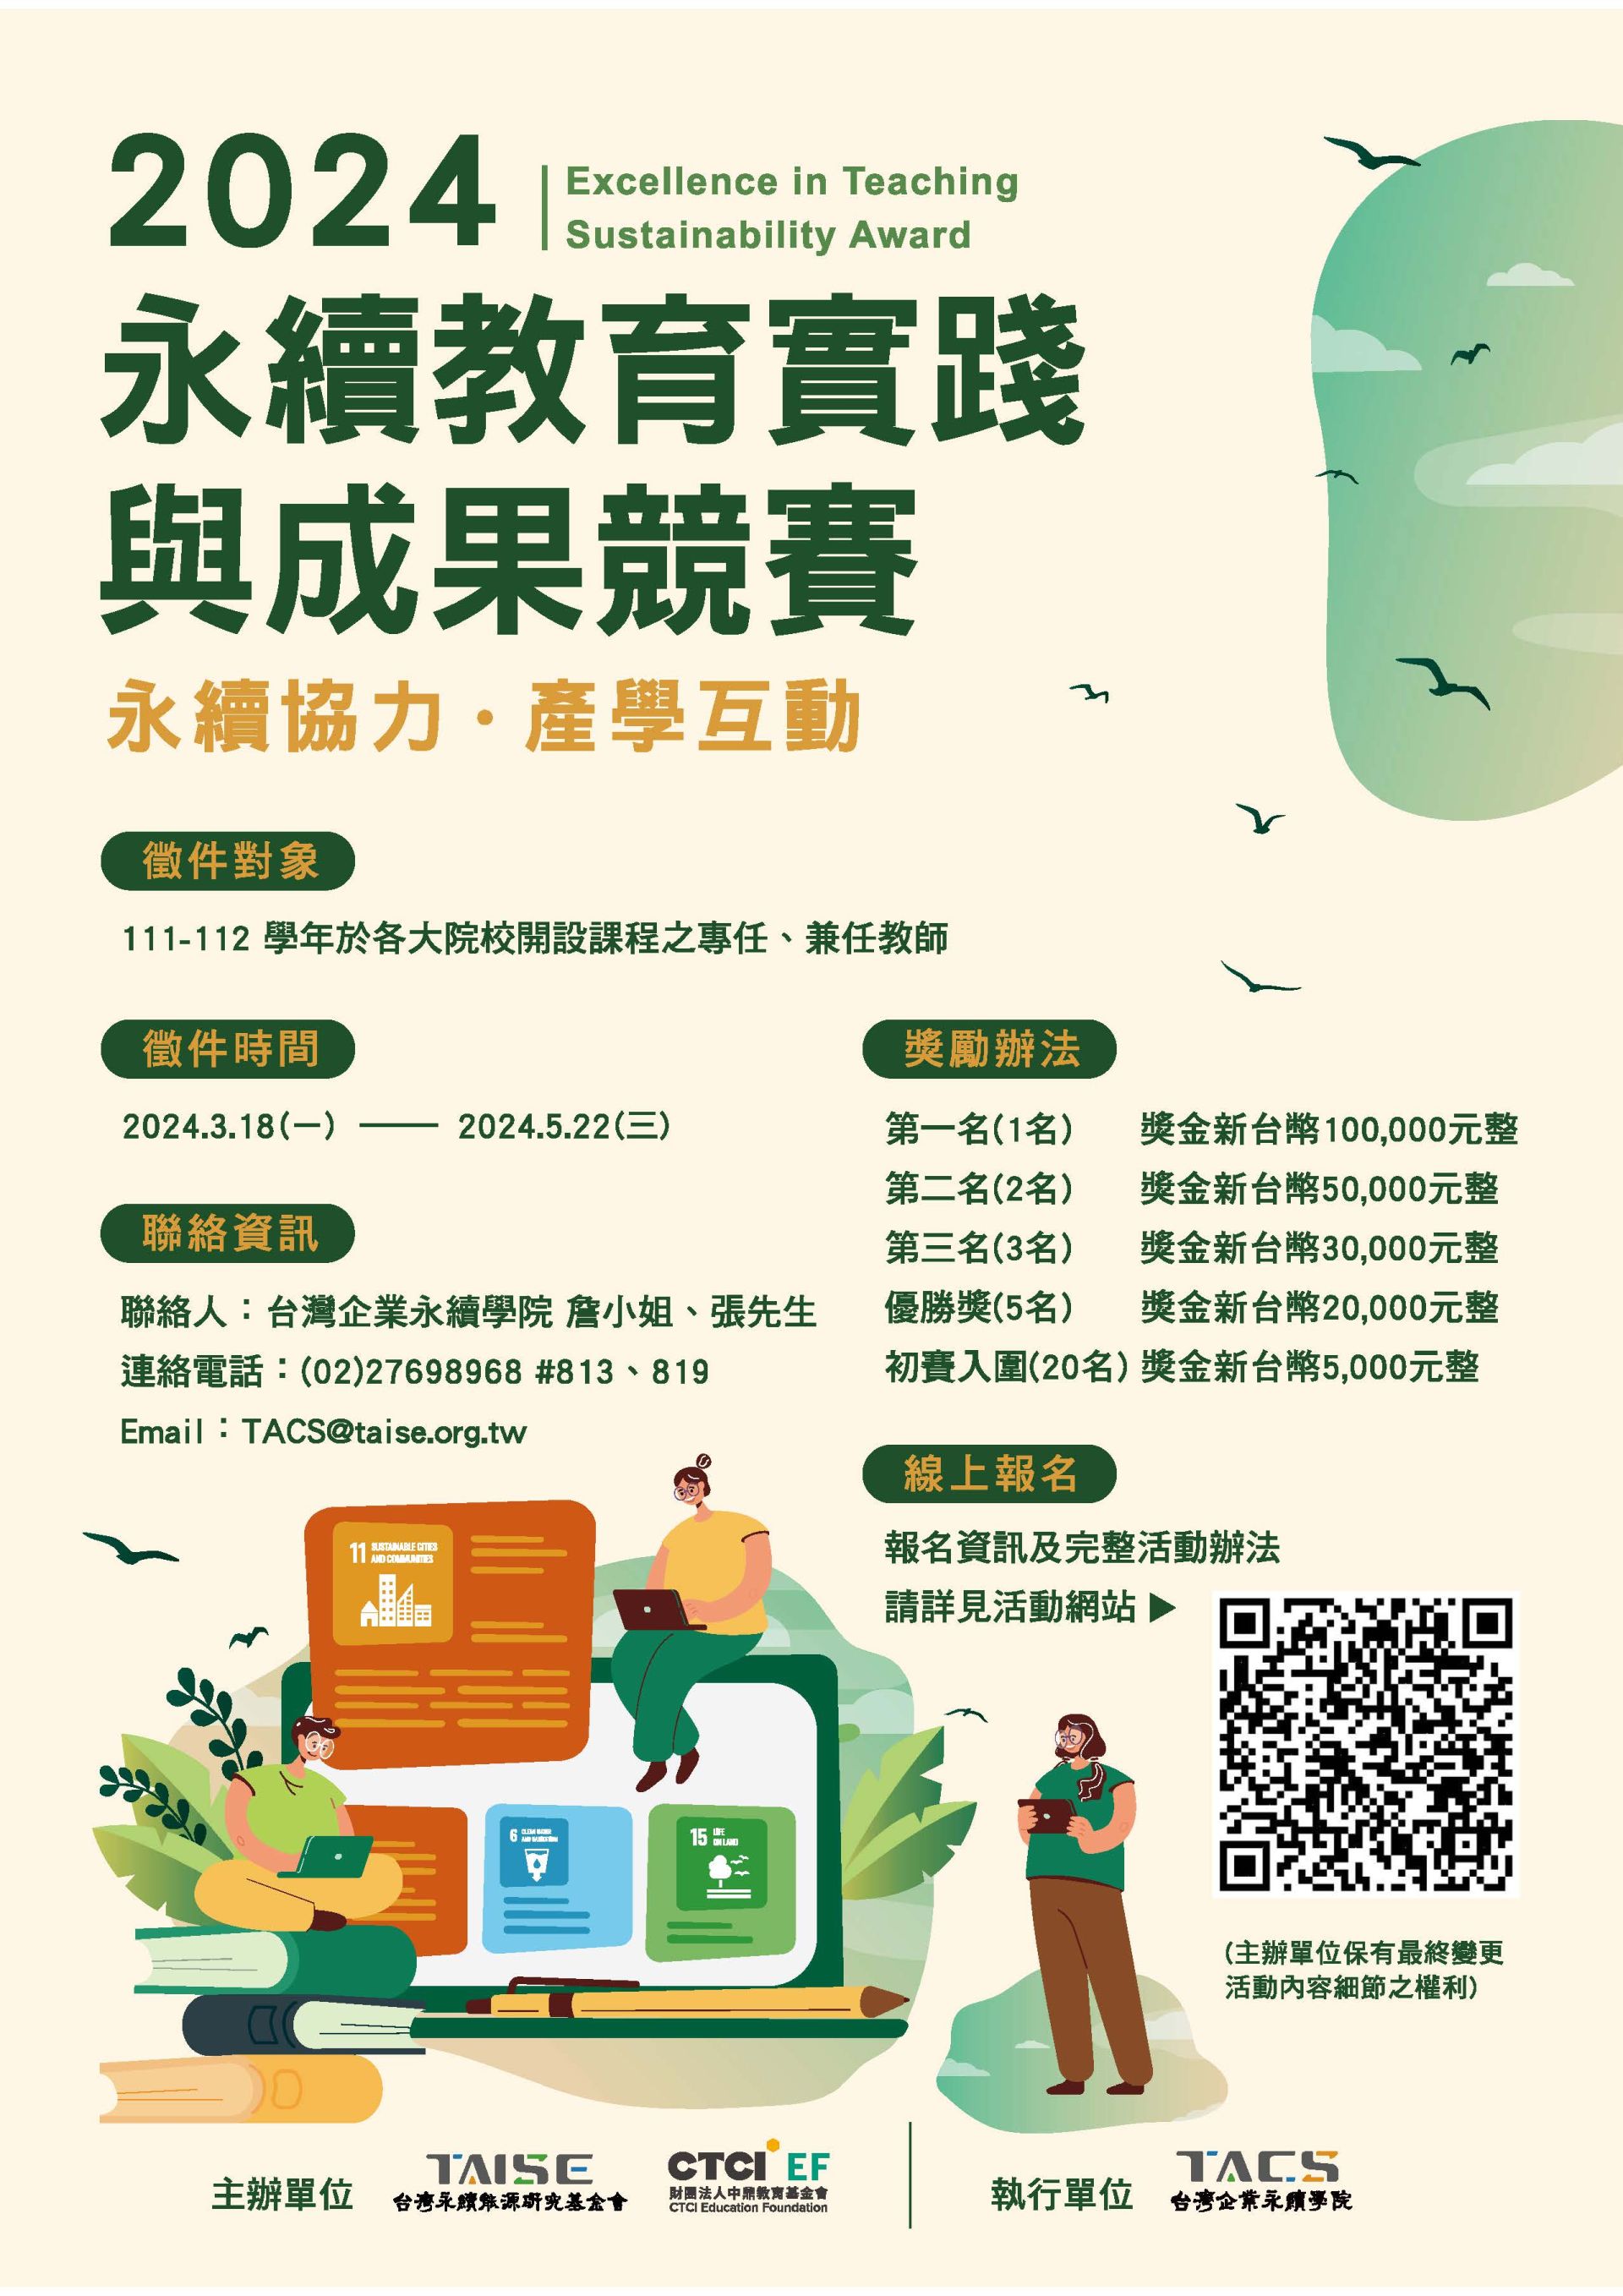 【敬邀報名】財團法人台灣永續能源研究基金會辦理「2024永續教學實踐與成果競賽」